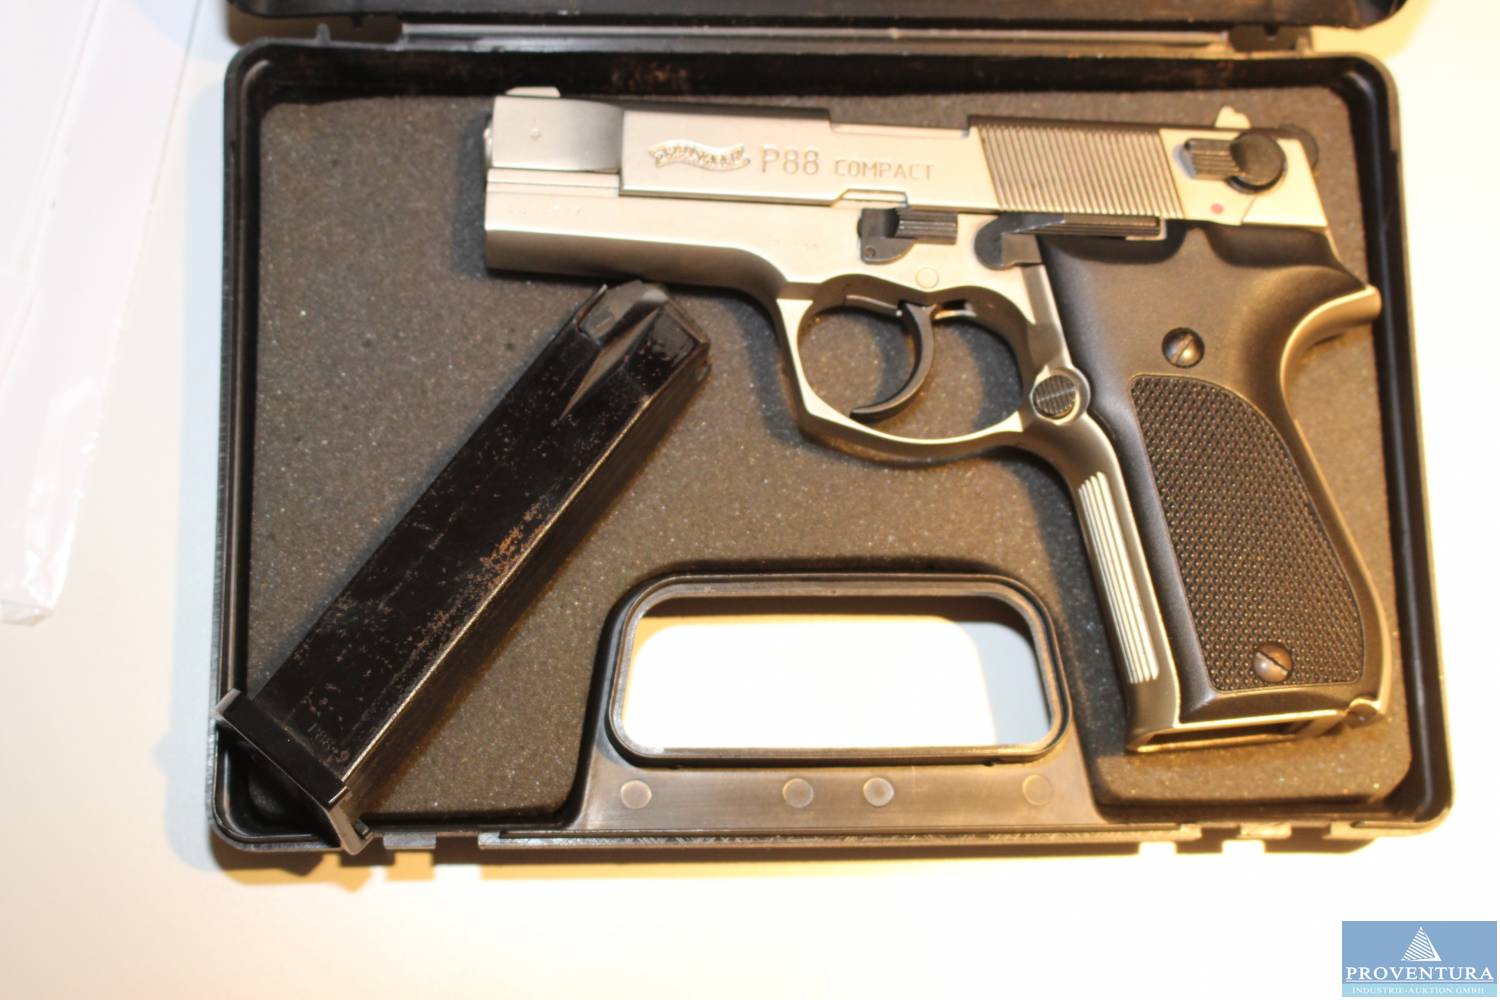 Schreckschuss-Pistole WALTHER P88-9 Compact